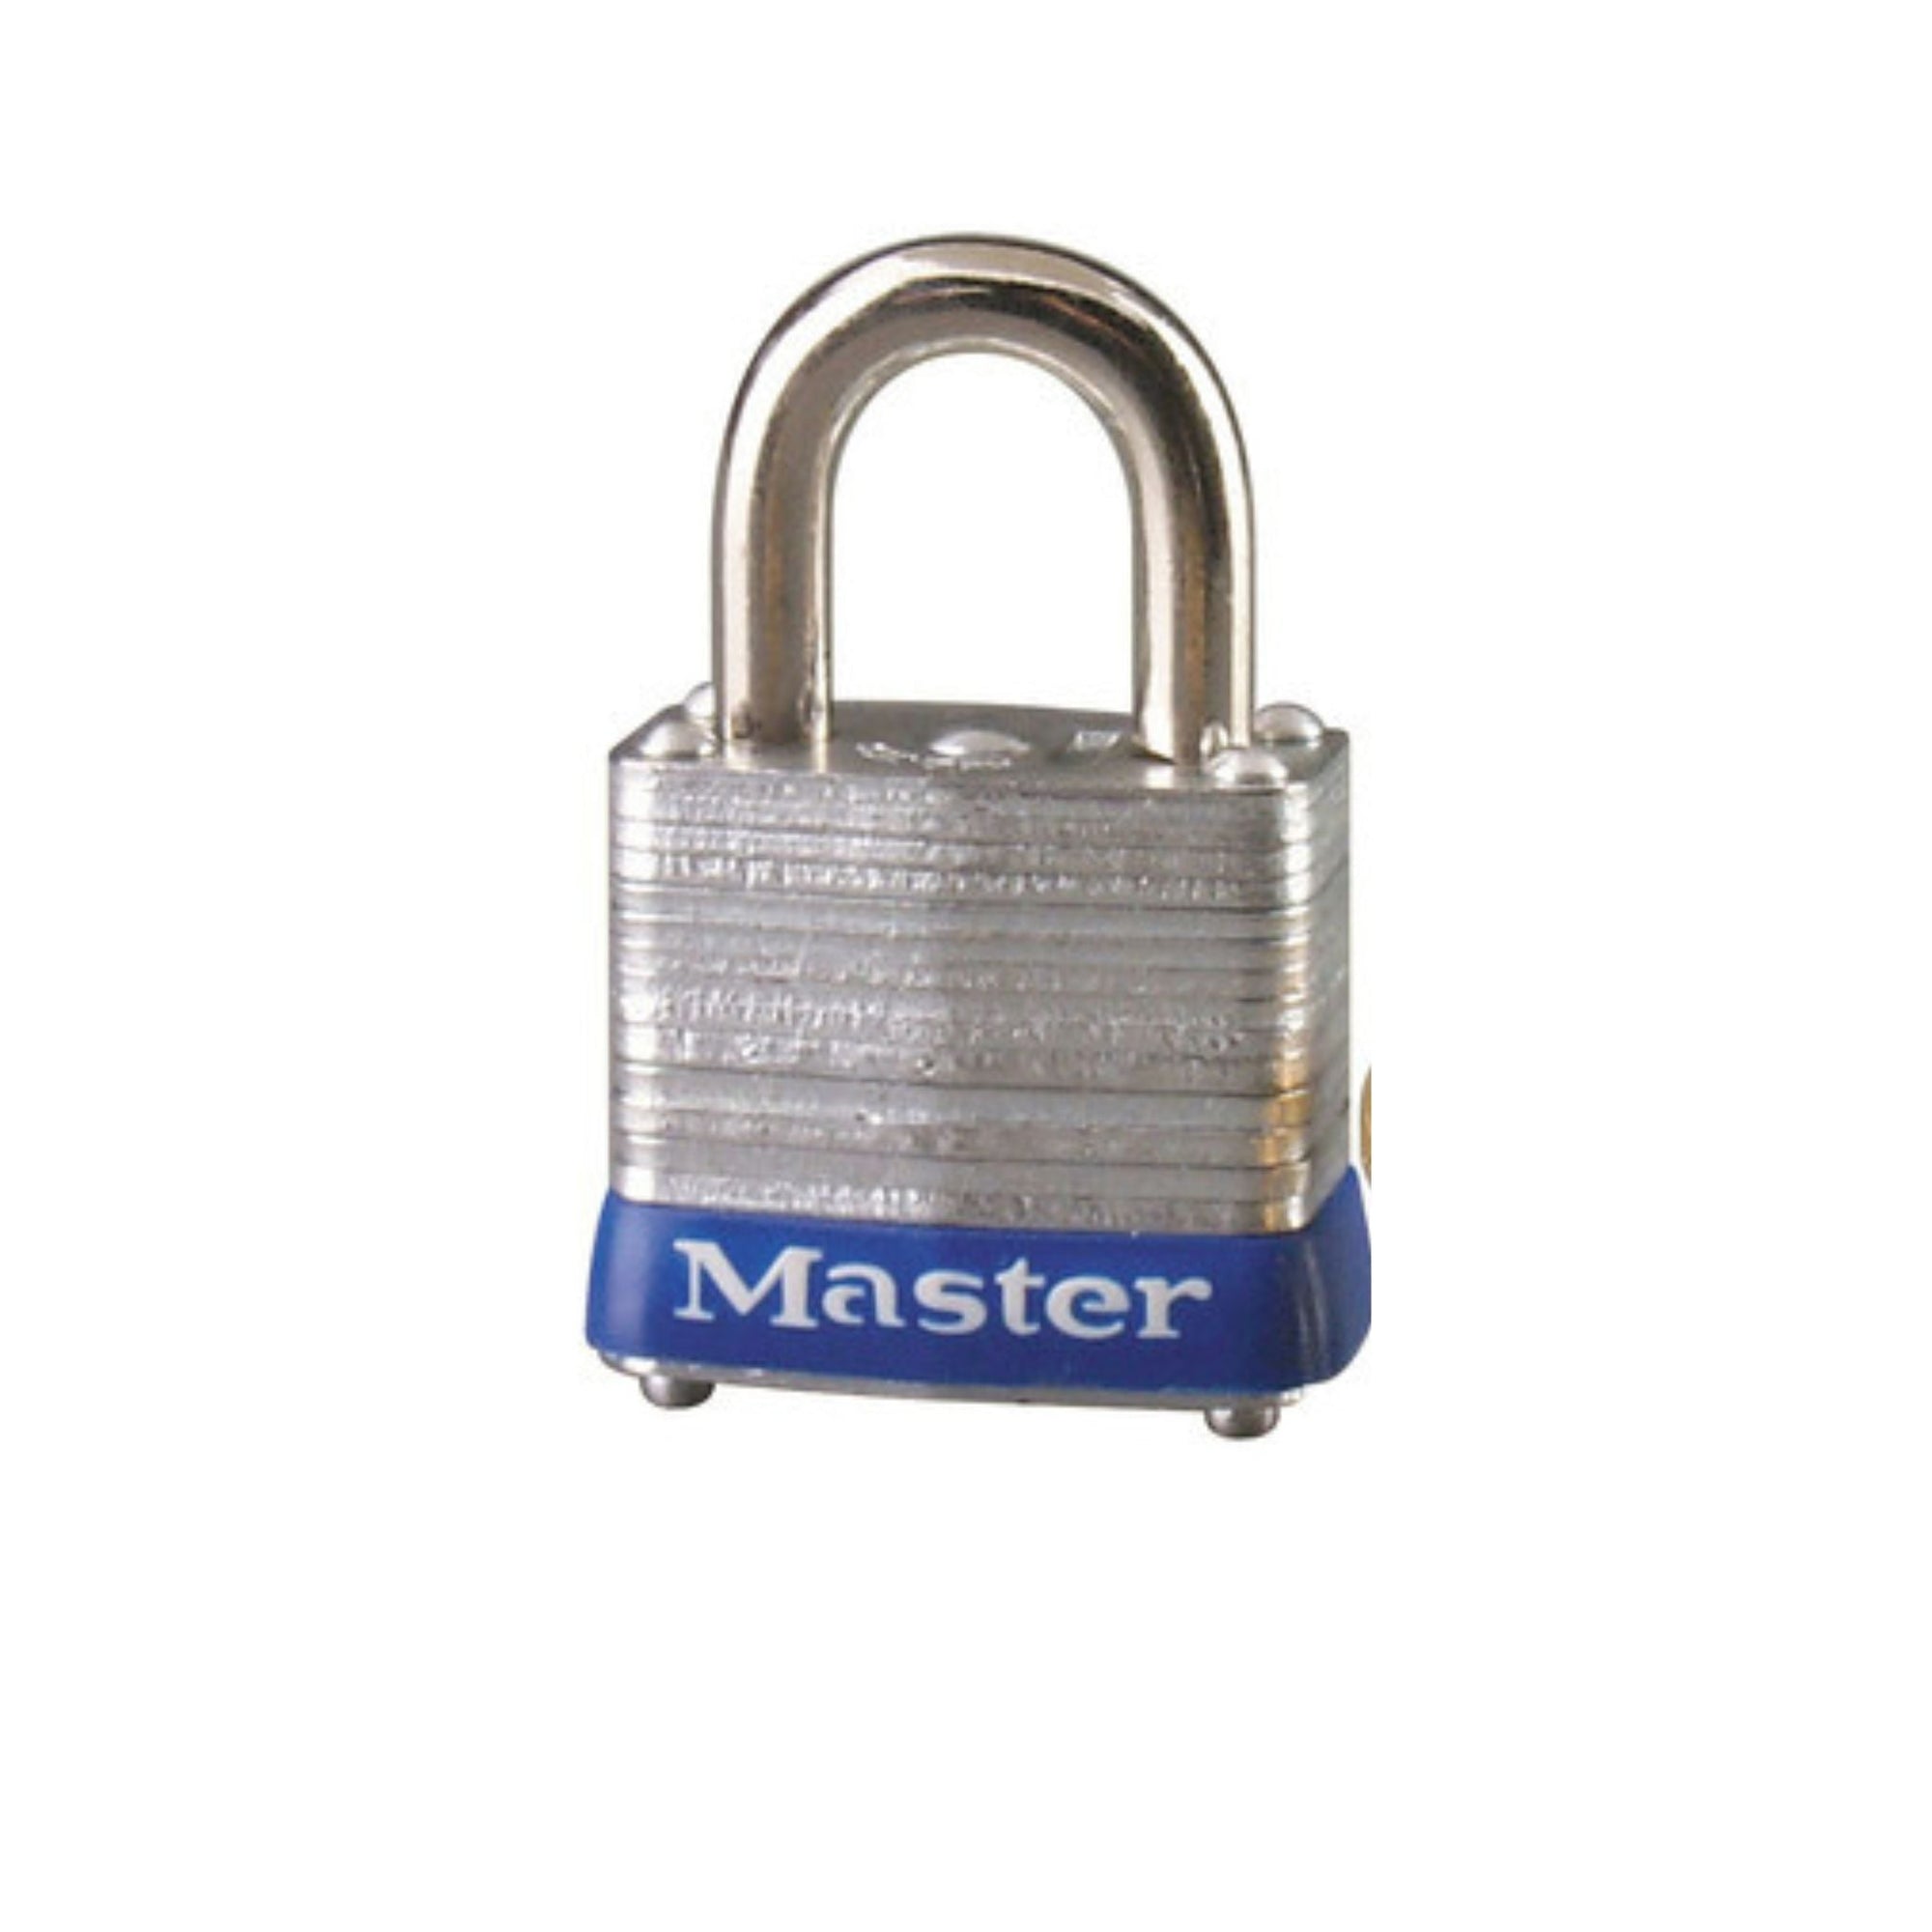 Master Lock 7KA P117 Lock Laminated steel No. 7 Series Padlock Keyed to Match Existing Key Number KAP117 - The Lock Source